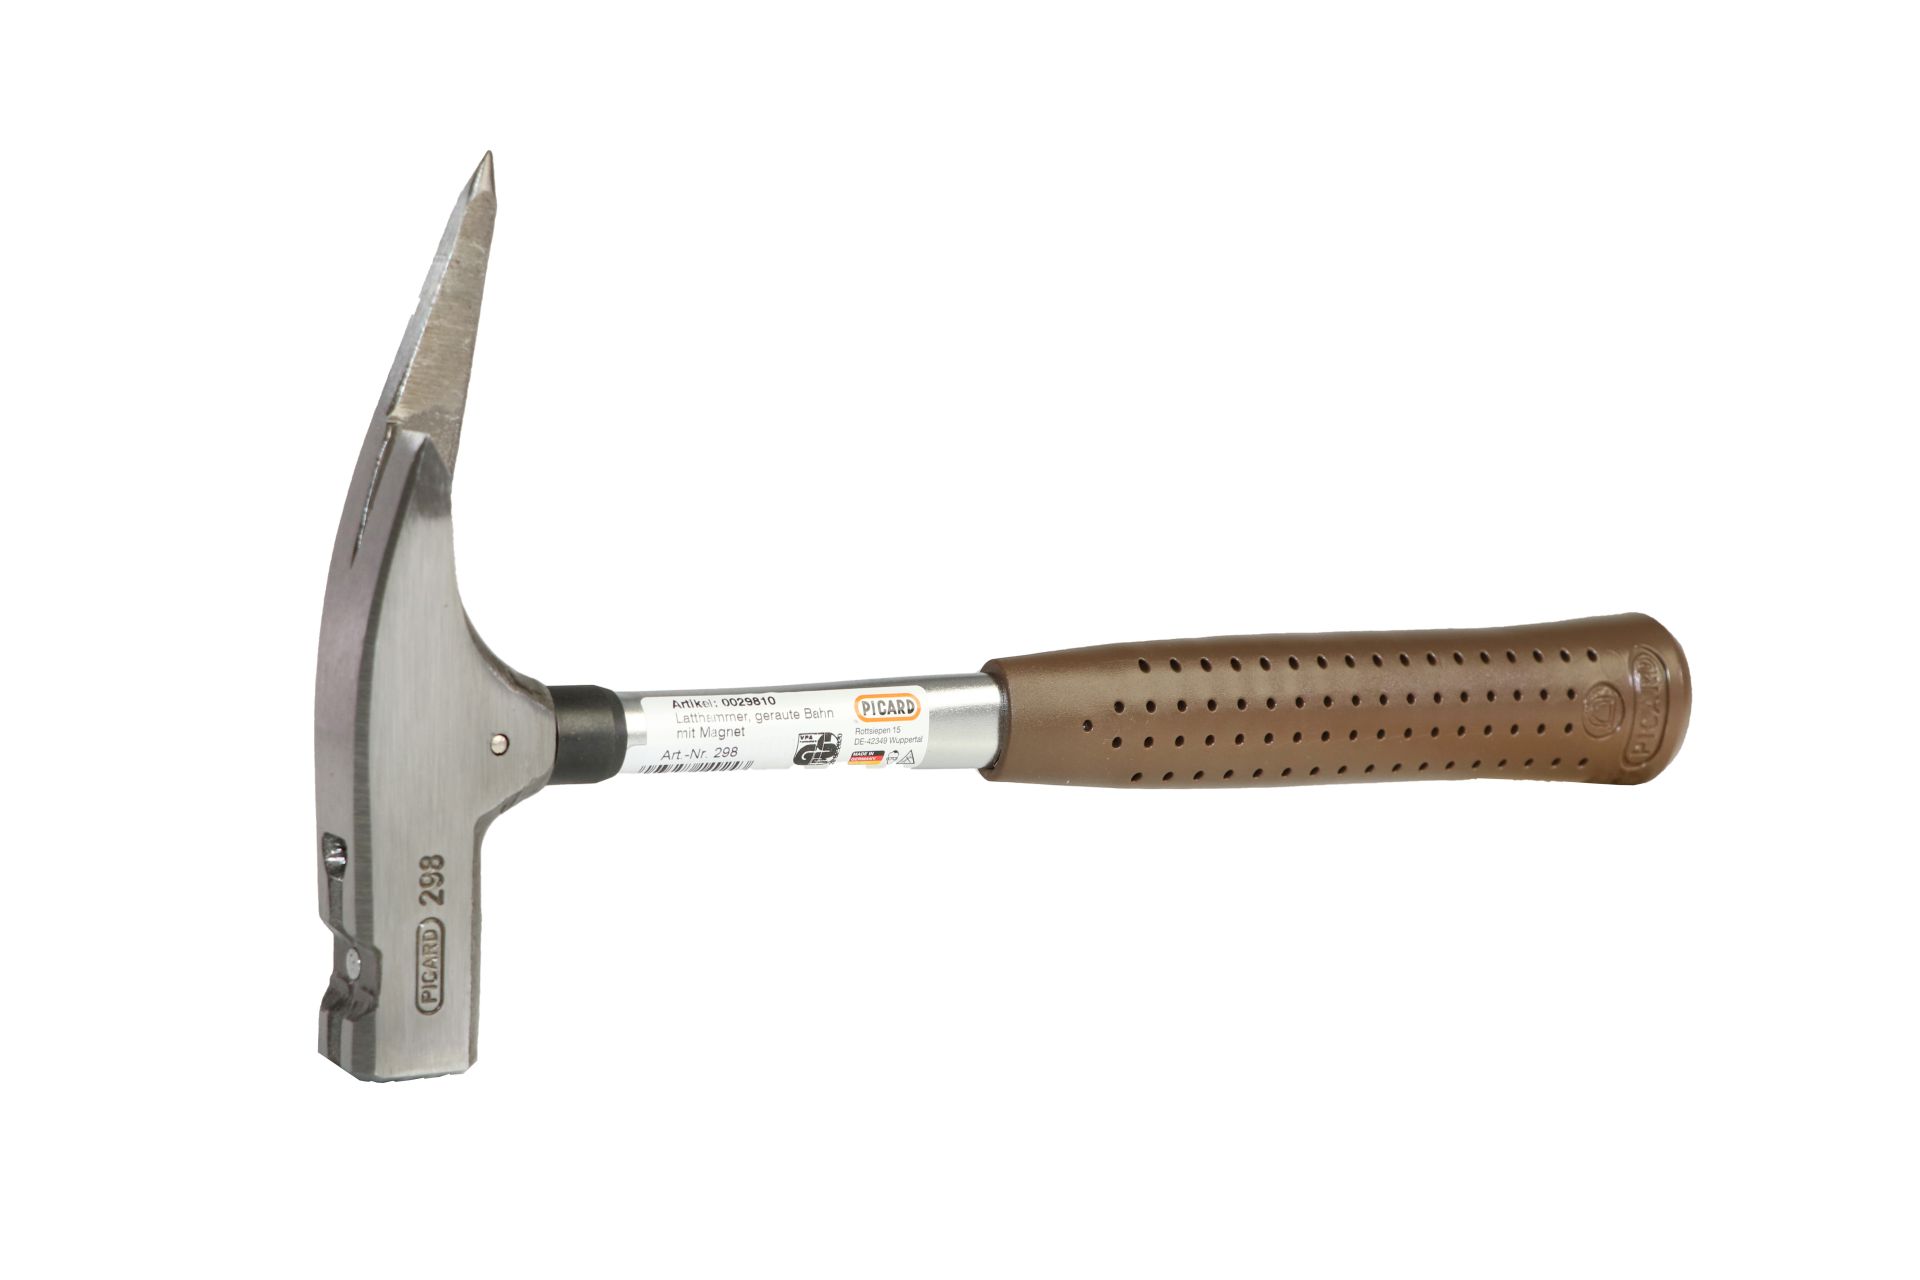 PICARD Latthammer, Zimmermannshammer oder Zimmererhammer, mit magnetischem Nagelhalter